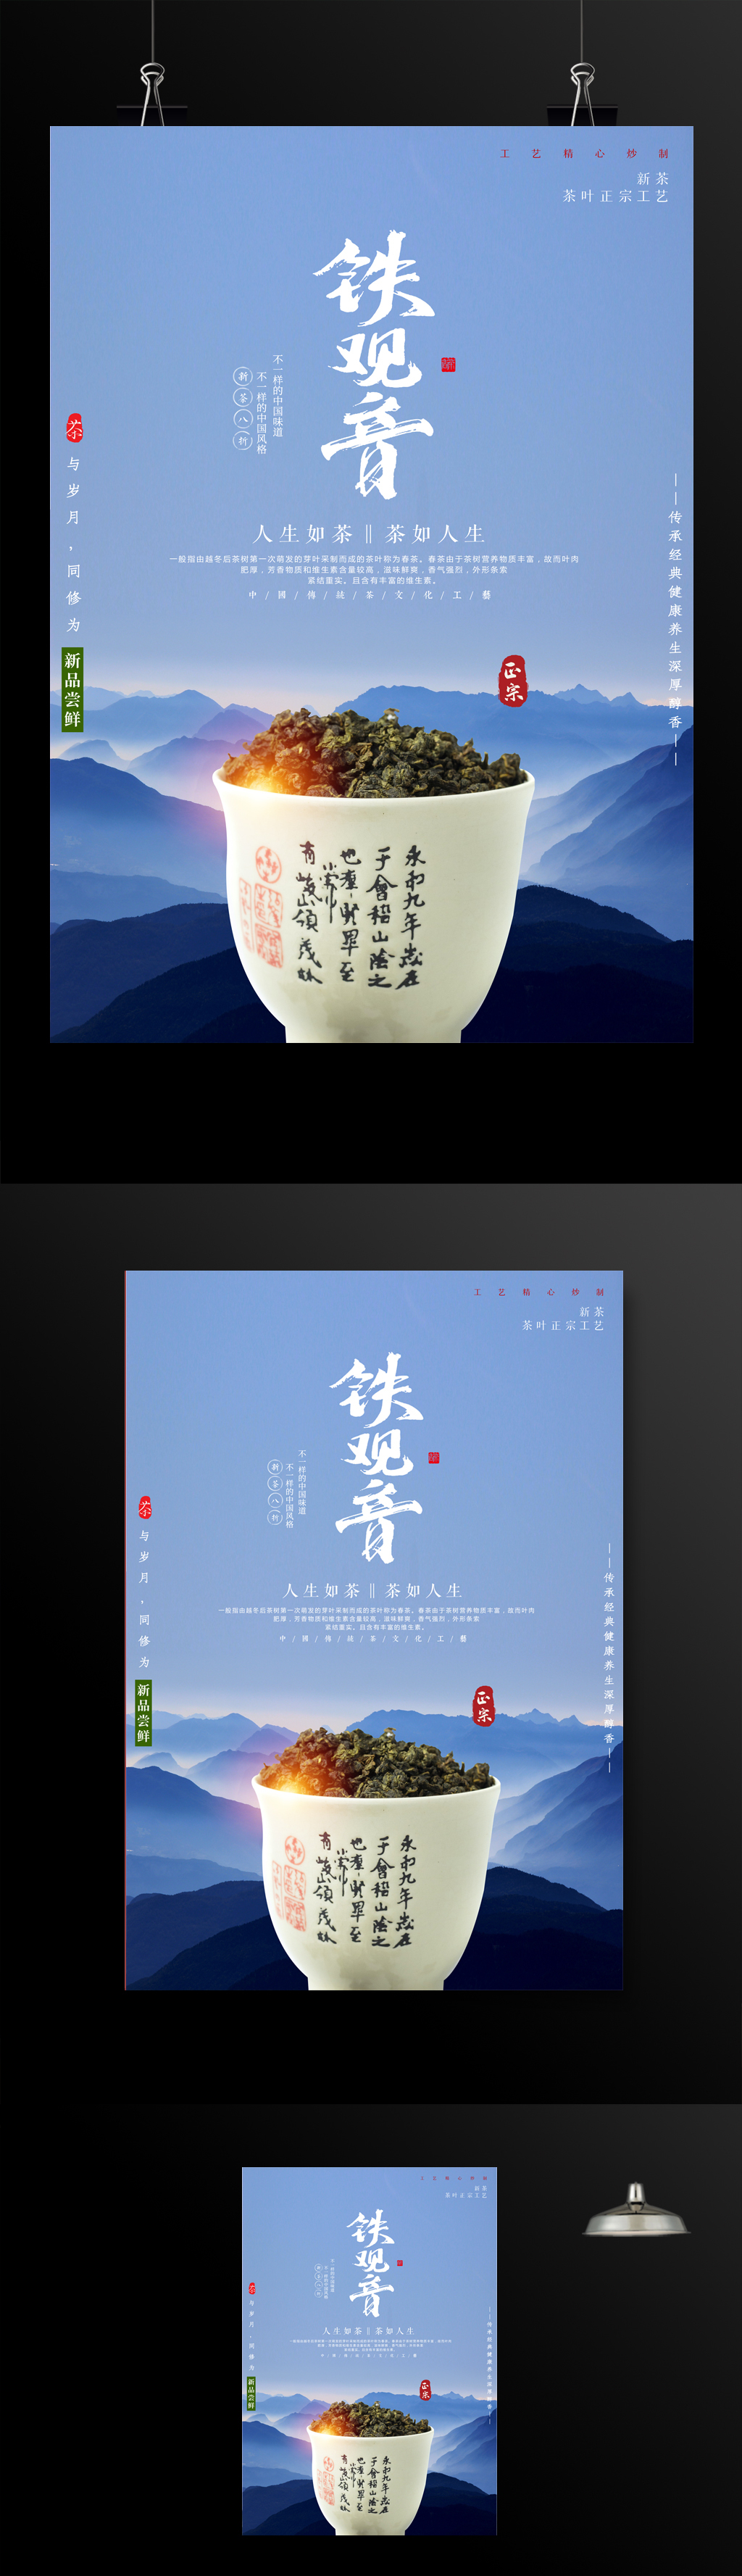 传统茶文化铁观音海报